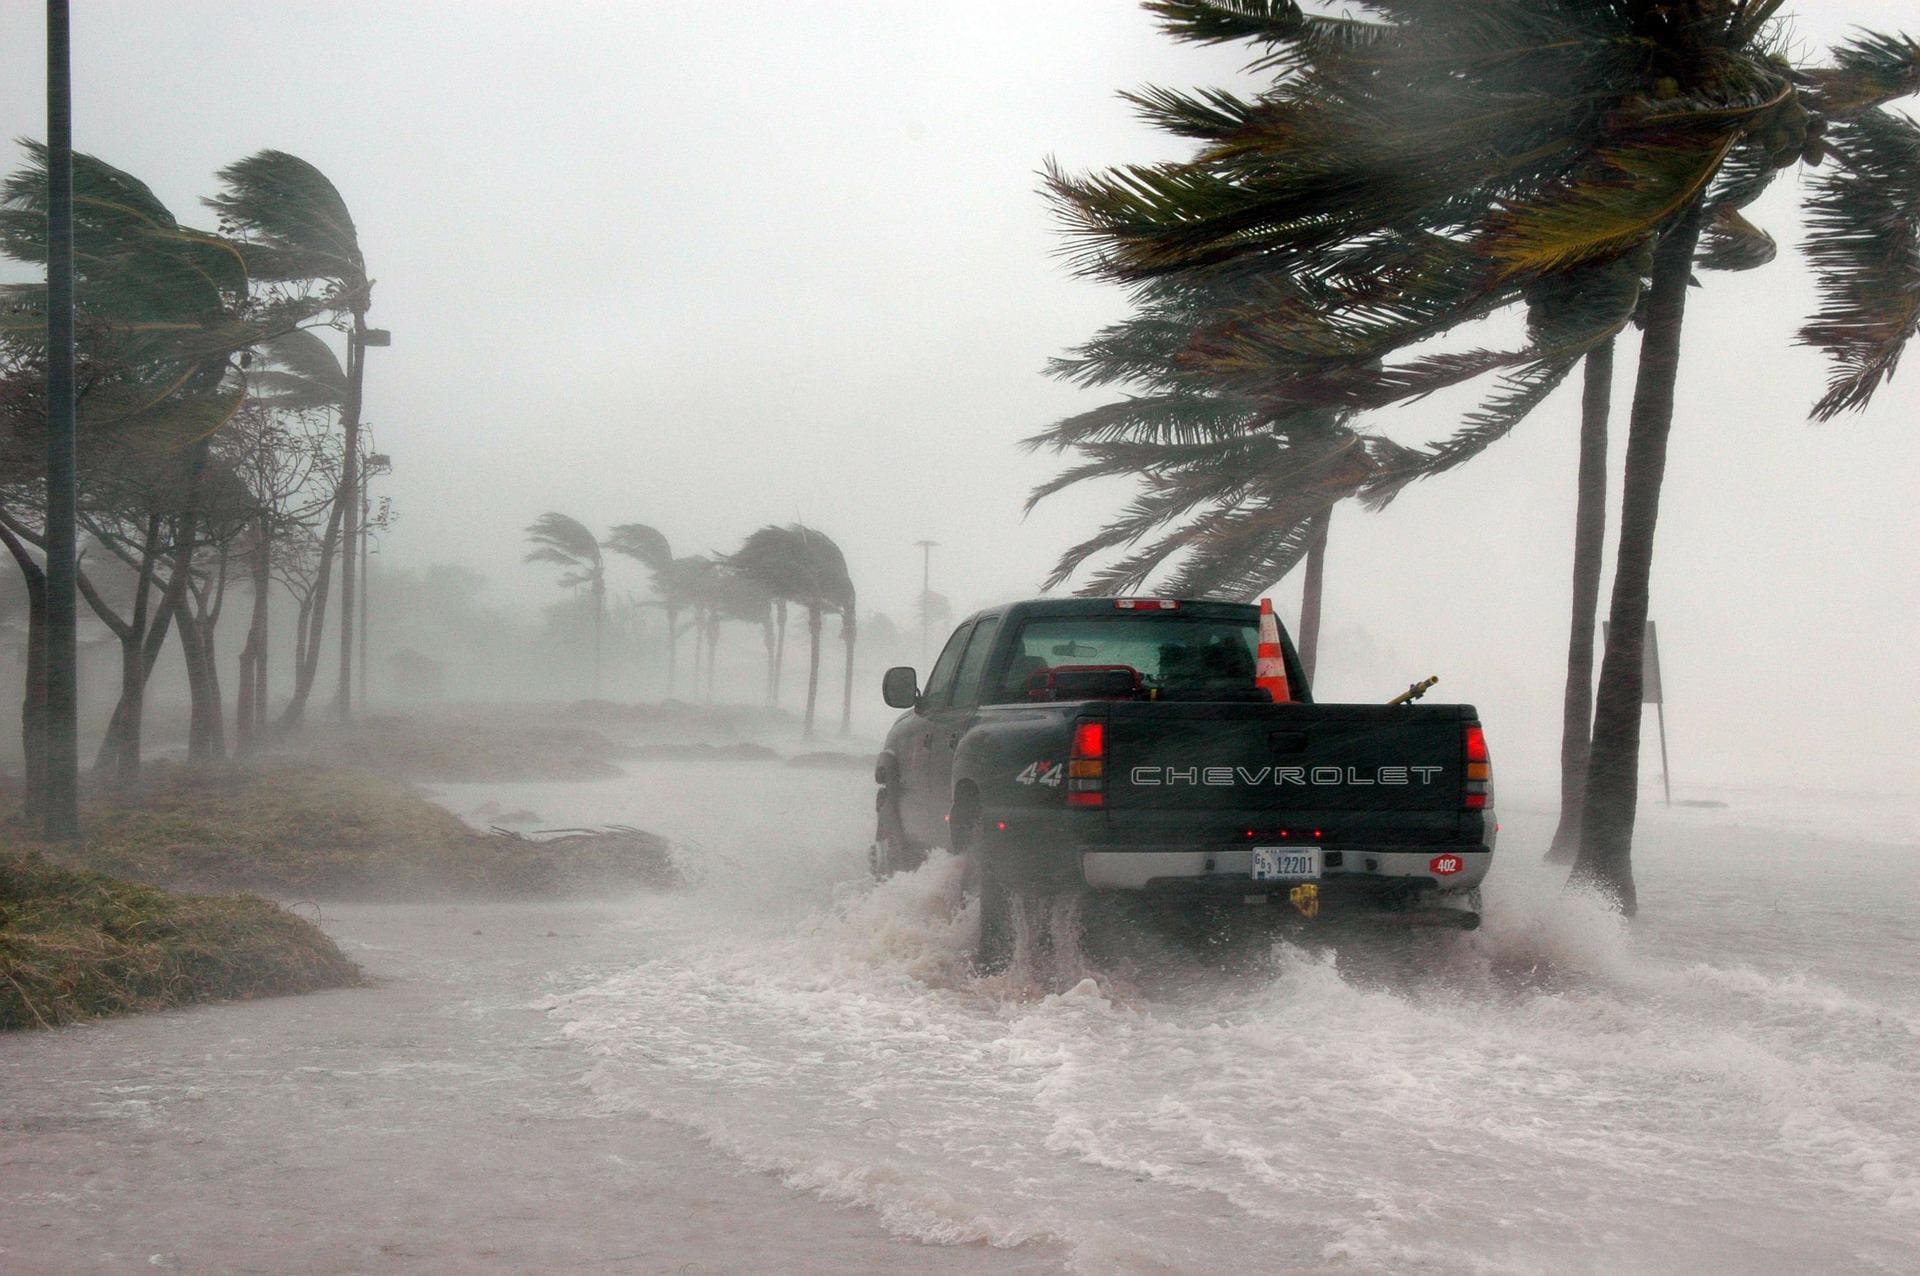 Hurricane - Hurricane Preparedness List